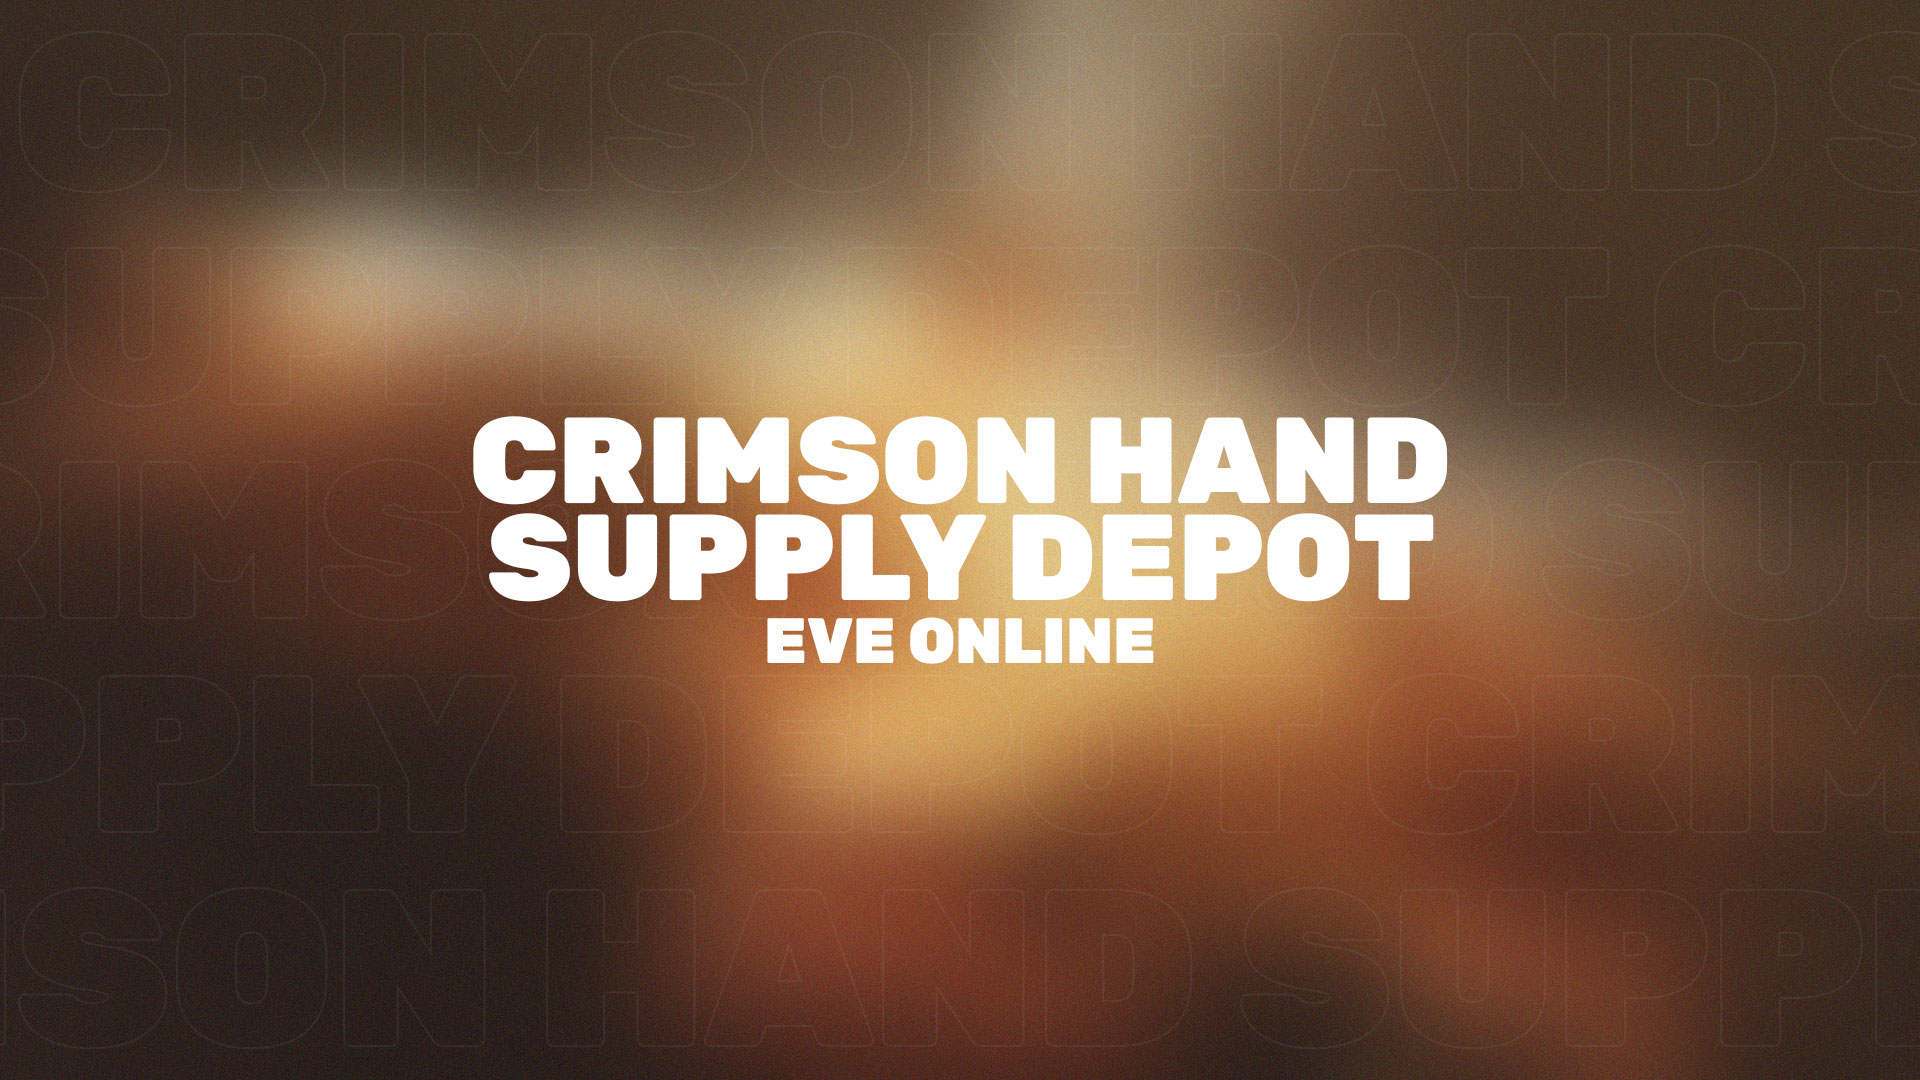 Подробное описание комплекса Crimson Hand Supply Depot (Blood Raider 6/10) со сложностью DED 6/10 в EVE Online.